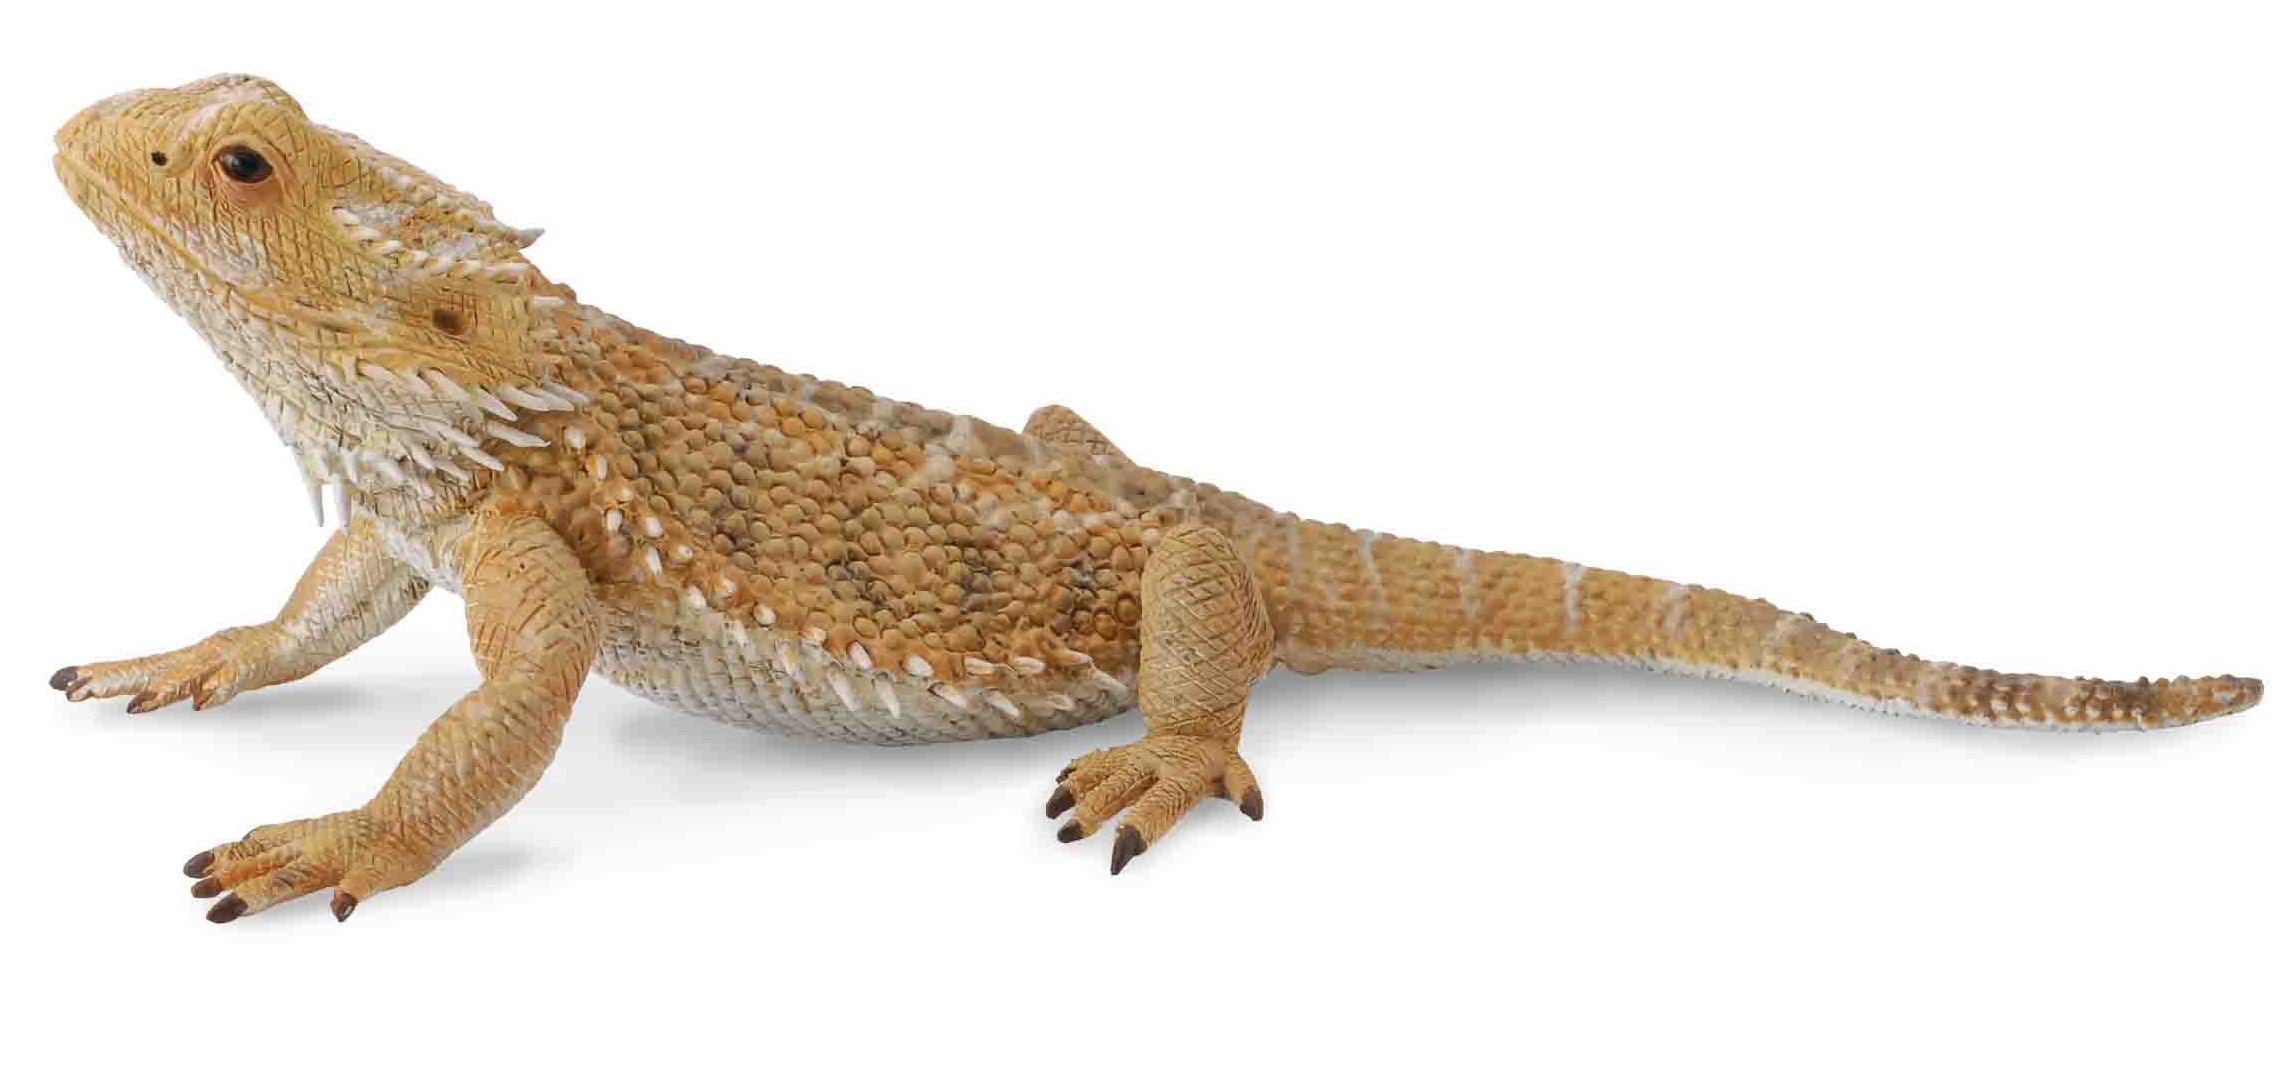 Beardead Dragon Lizard 88567b - Альметьевск 